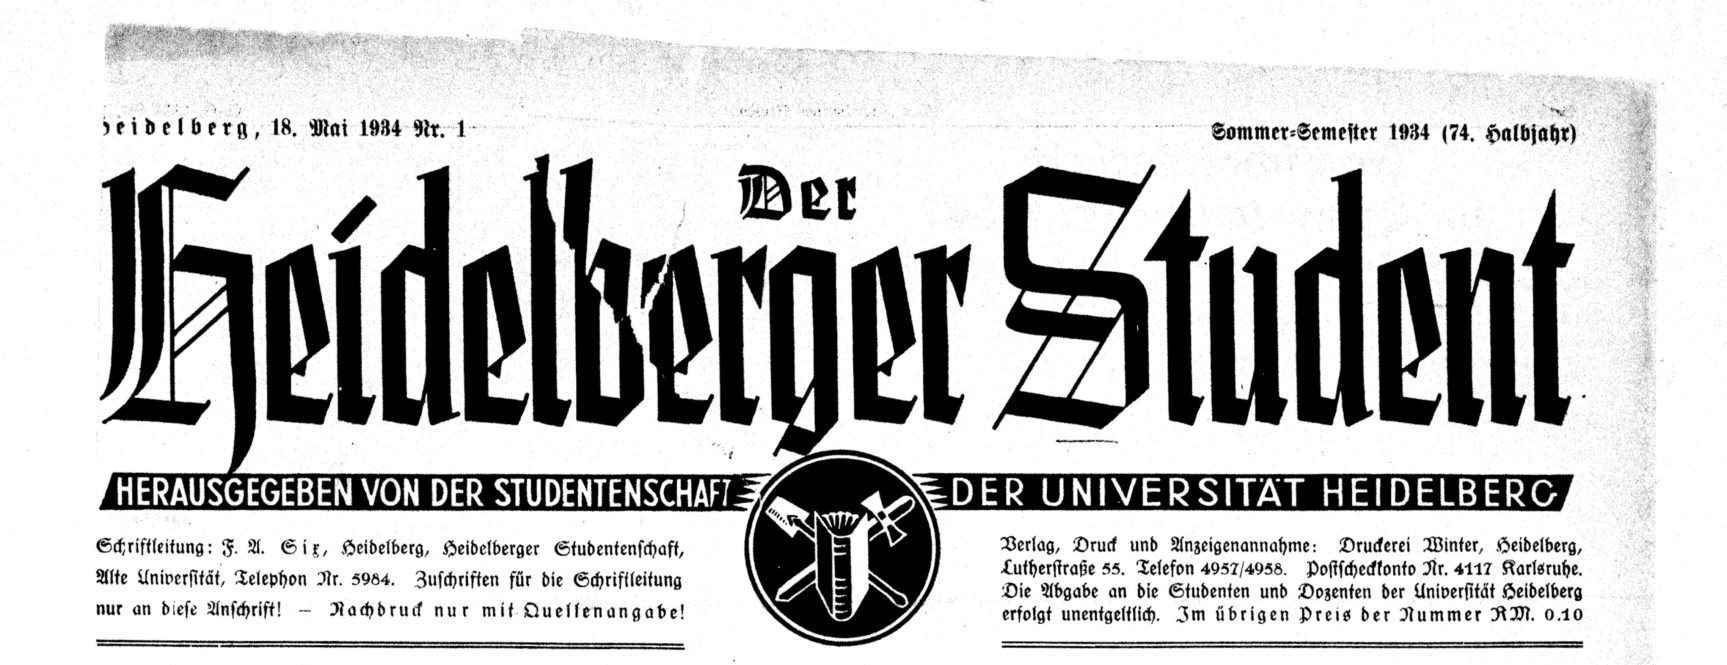 Der Heidelberger Student wurde von den Nationalsozialisten als Propagandaorgan missbraucht. Foto: https://digi.ub.uni-heidelberg.de/diglit/hdstud1929bis1938